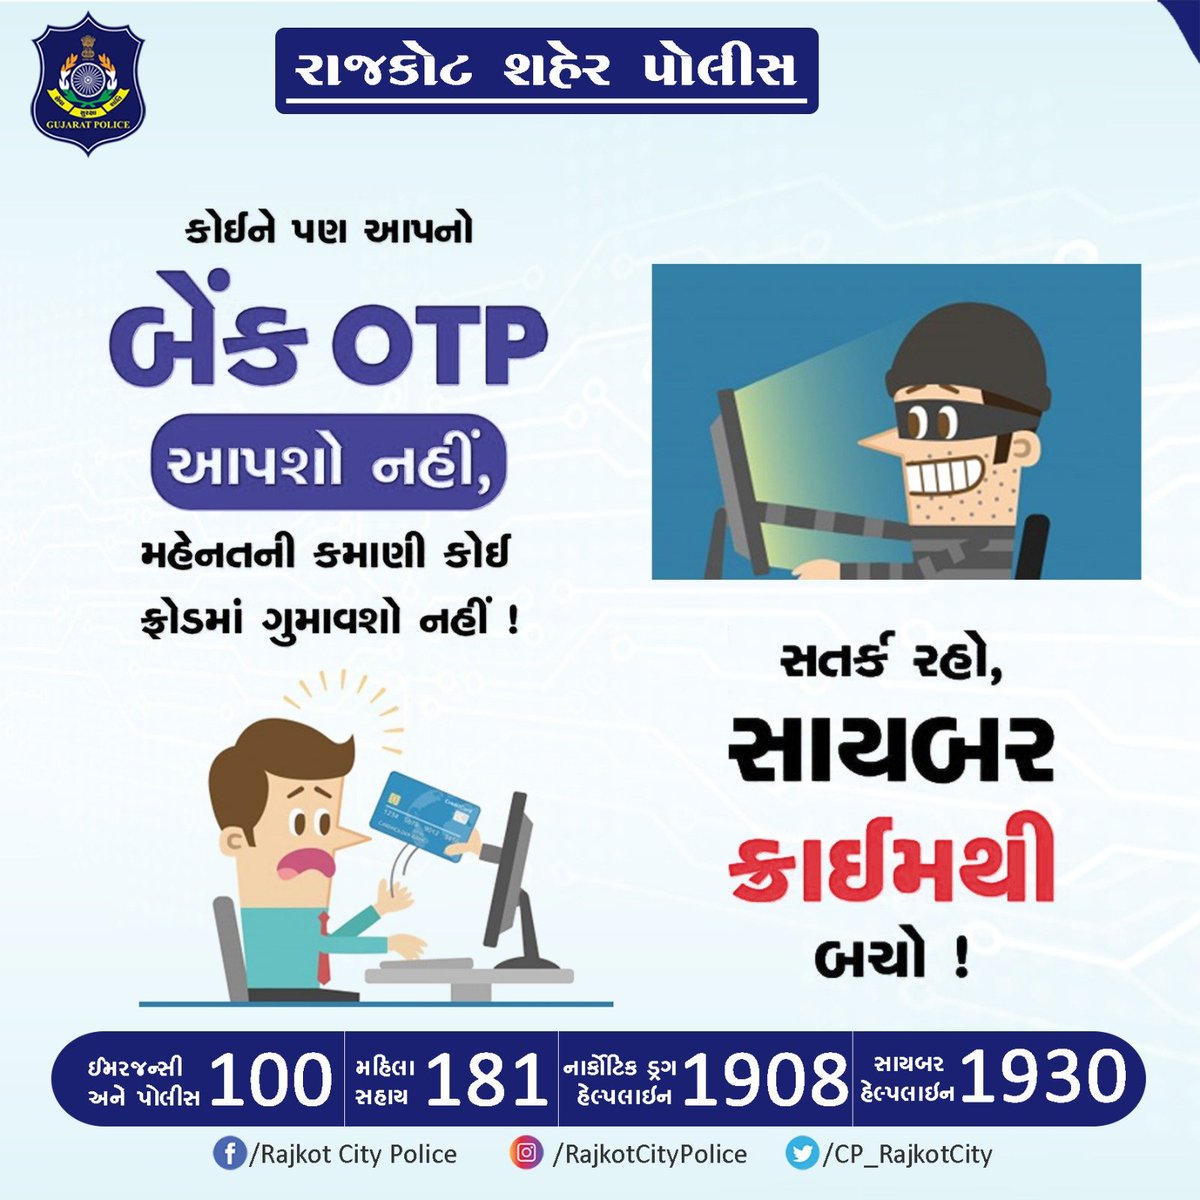 કોઈને પણ આપનો બેંક OTP આપશો નહીં, 
મહેનતની કમાણી કોઈ ફ્રોડમાં ગુમાવશો નહીં !

#RajkotCityPolice #Rajkot #GujaratPolice #Gujarat  #StaySafe #CyberSafety #CyberCrime #OTPFraud #Hacker #Hack @GujaratPolice